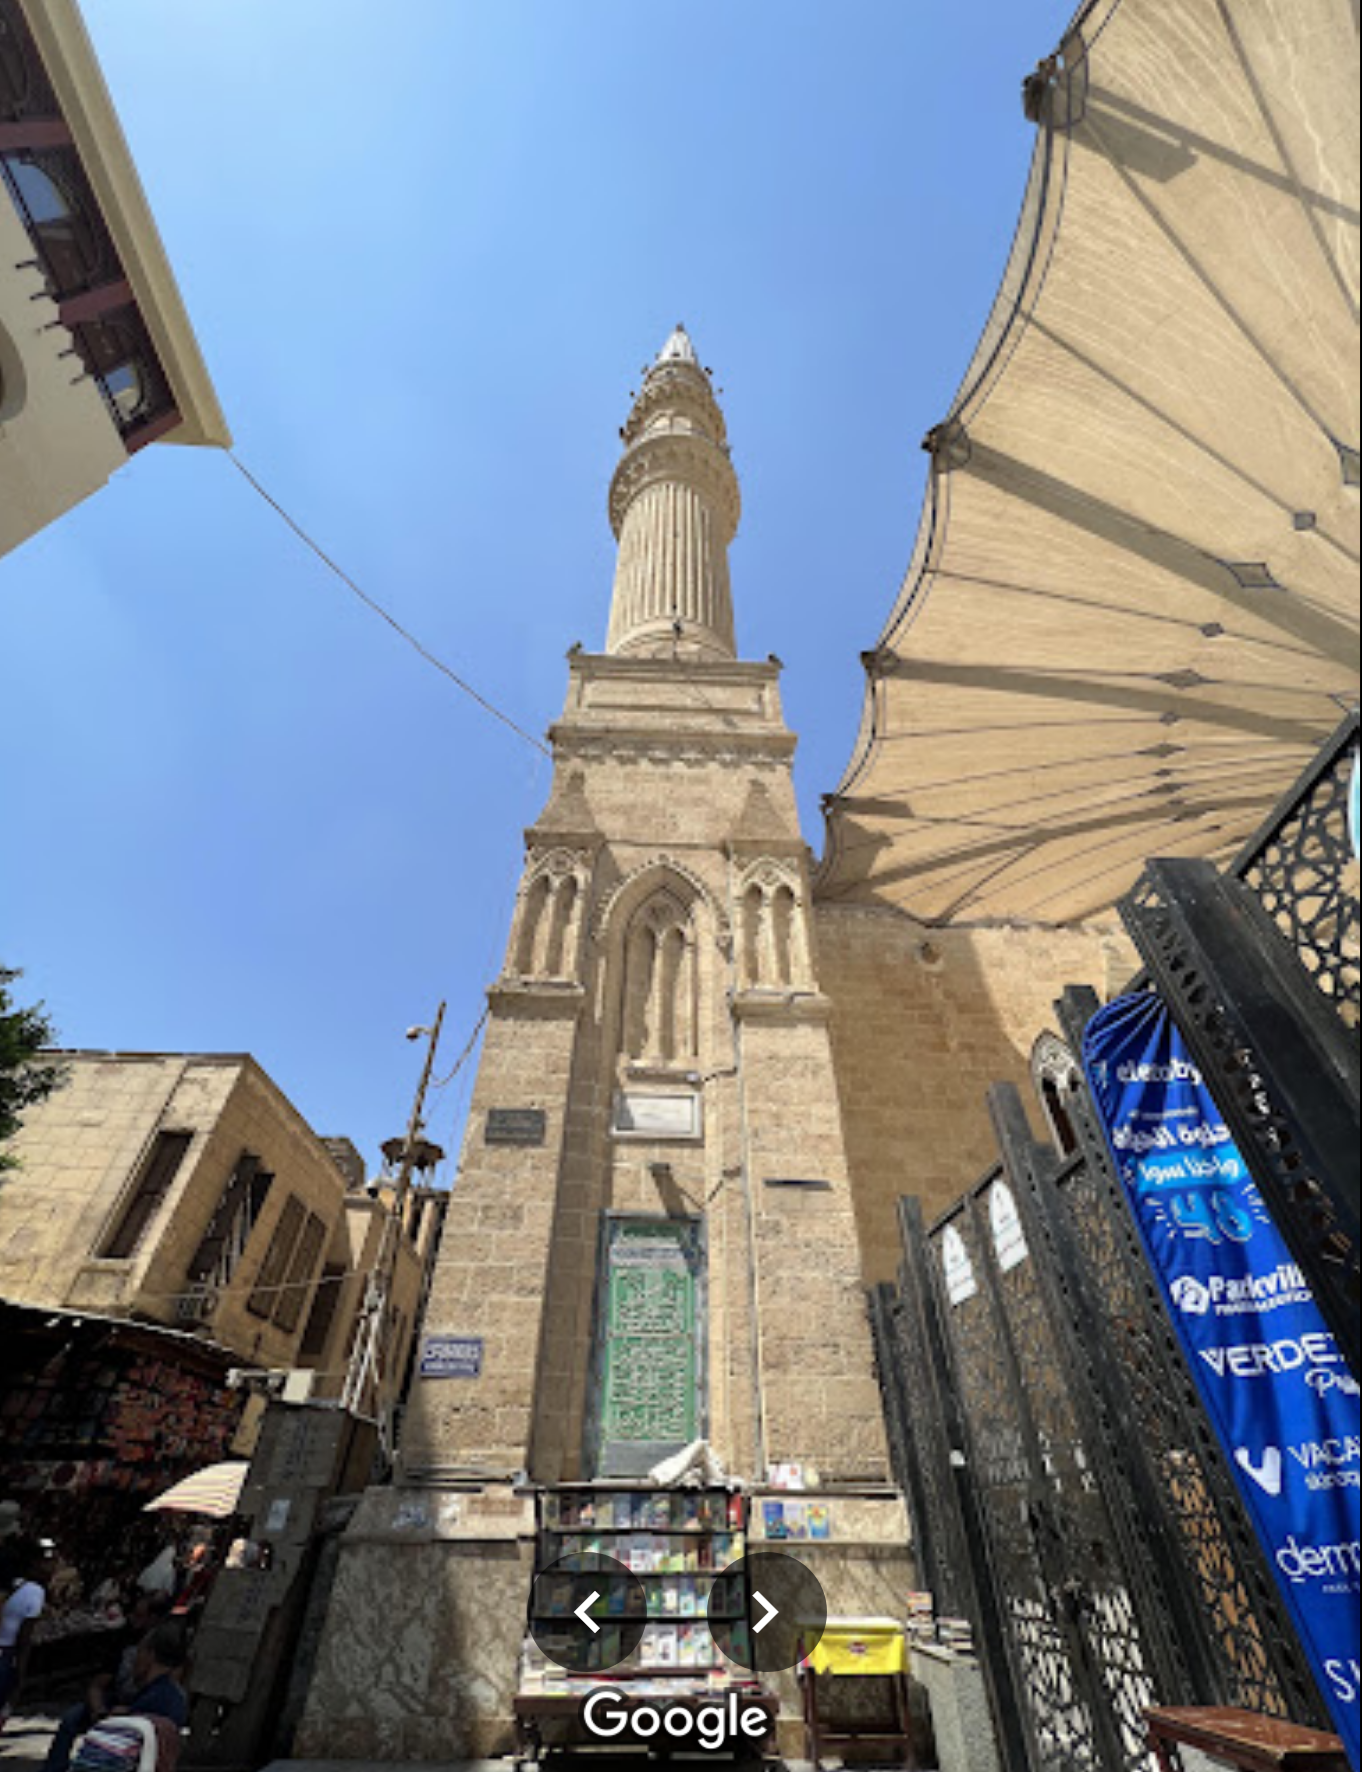 Damascus | Darwishiyya Mosque Sandal Poetry